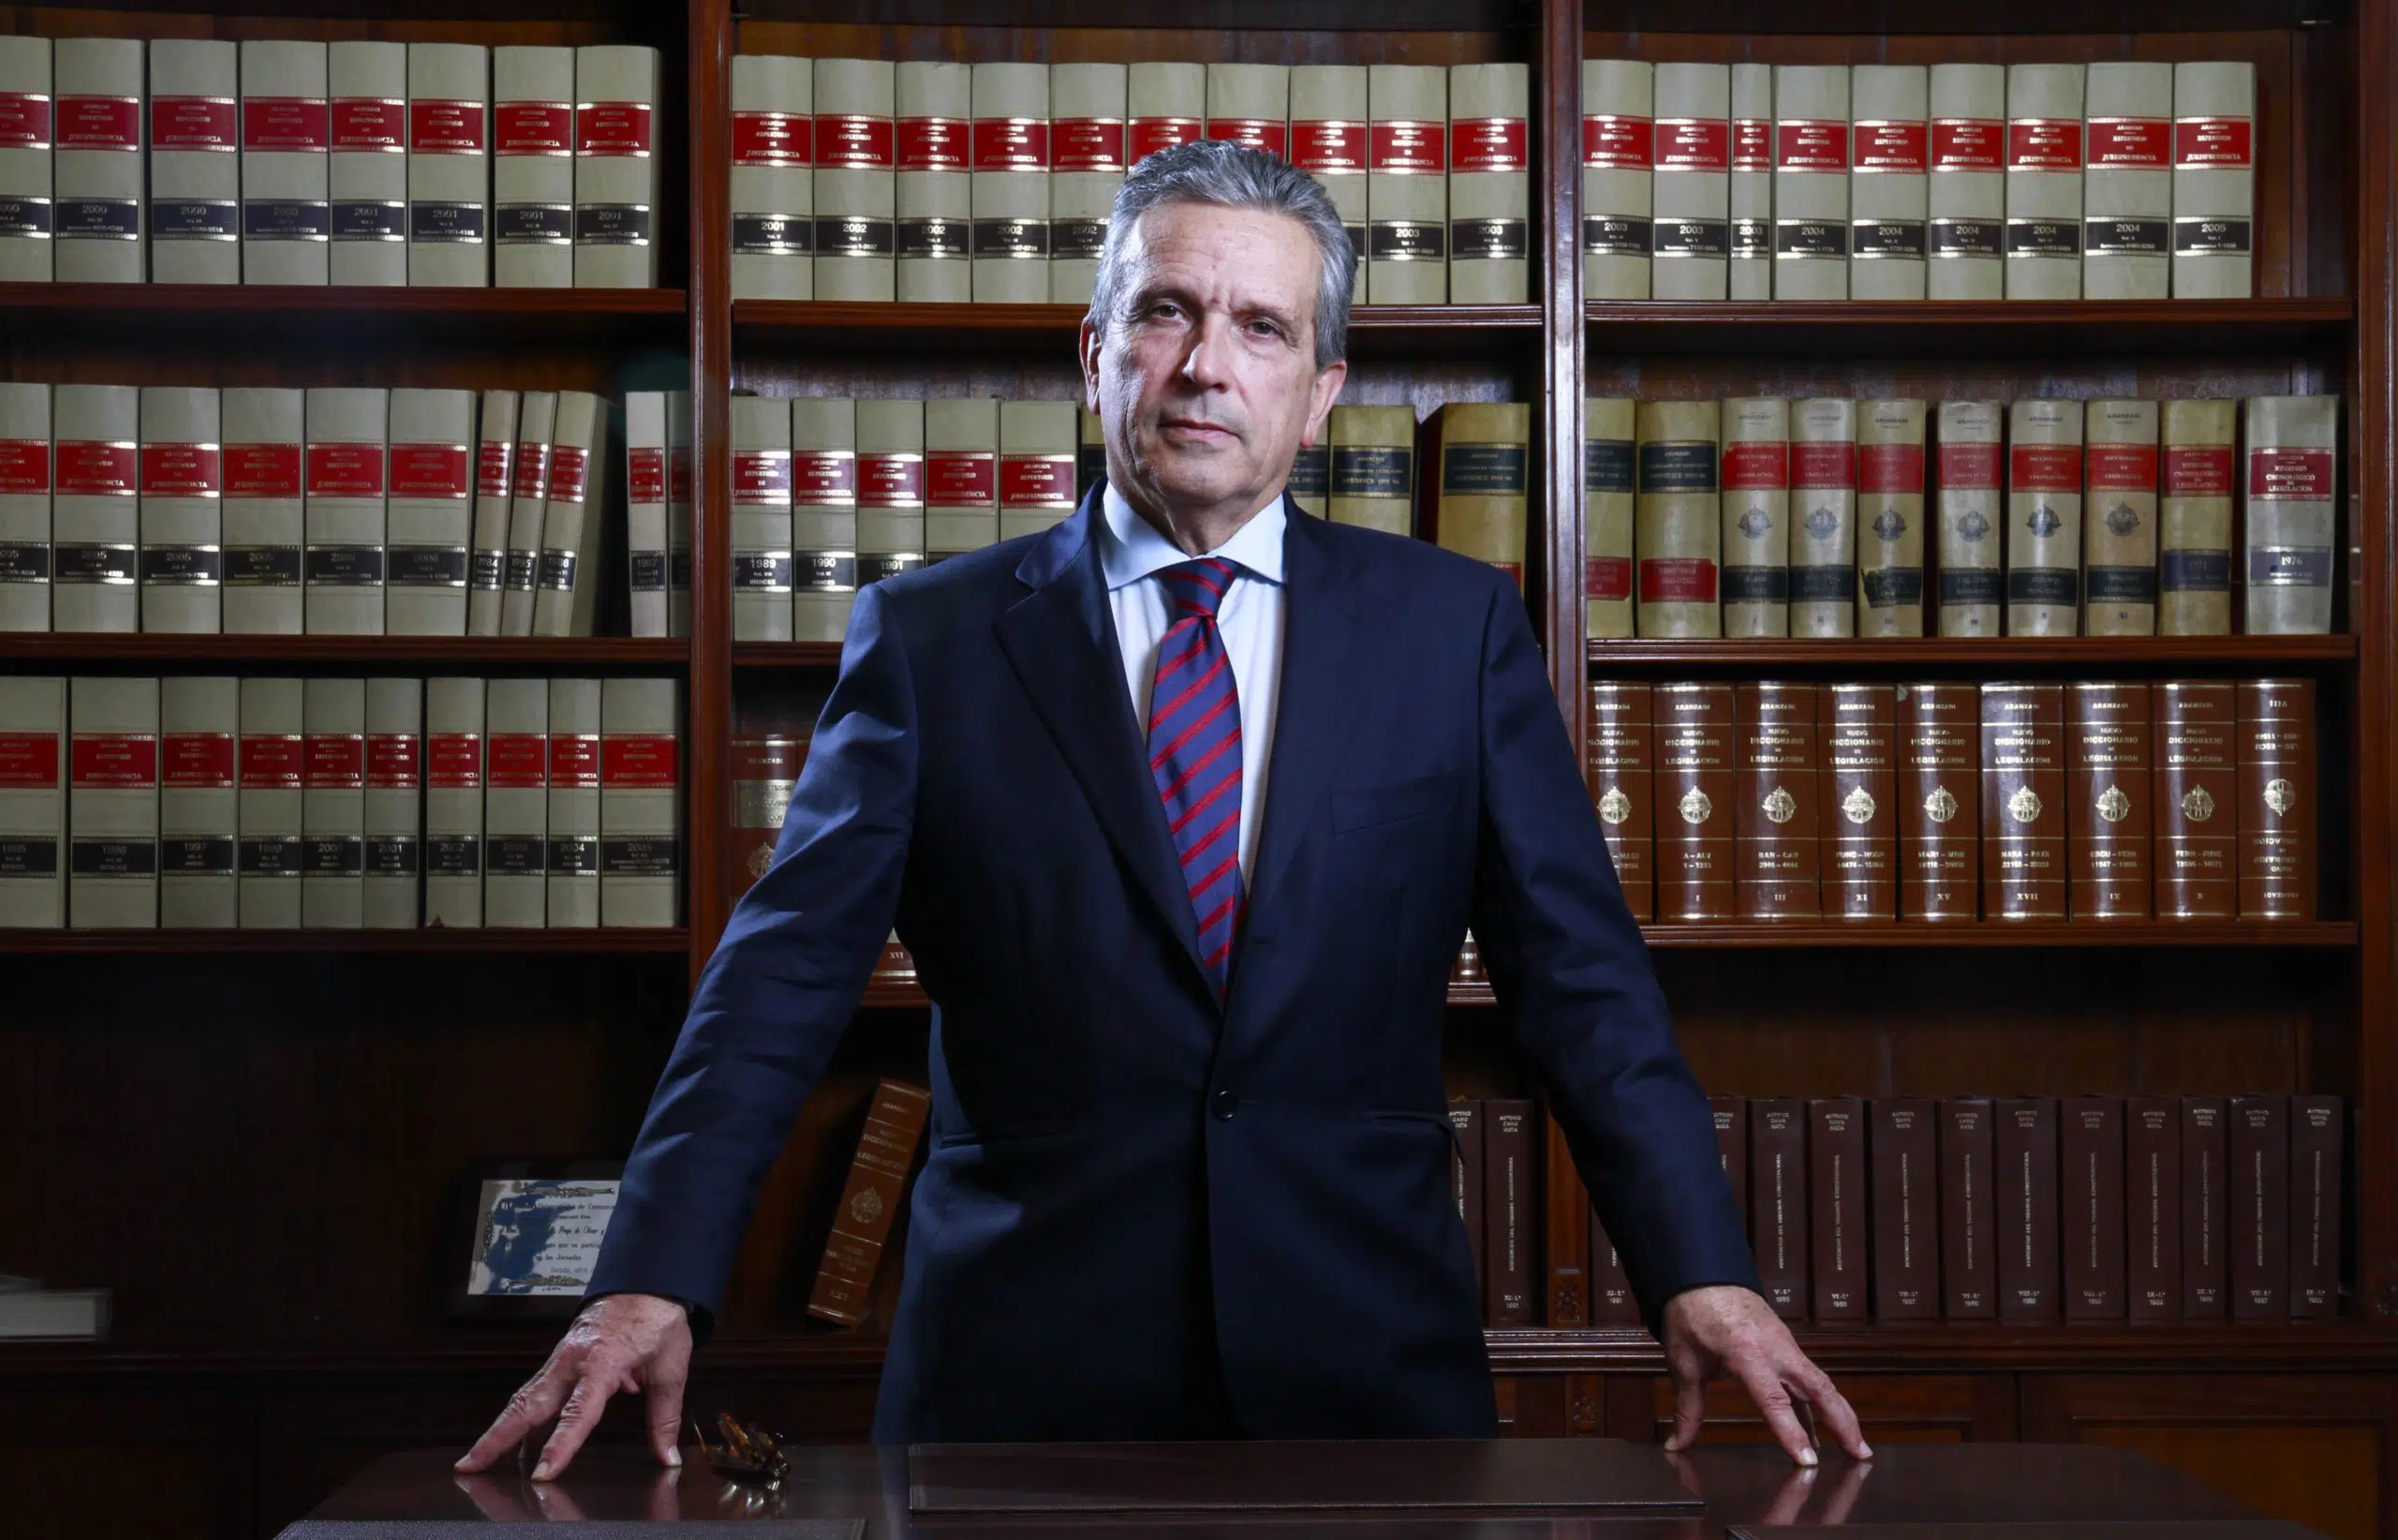 El exvocal del CGPJ y abogado, Adolfo Prego, plantea que los vocales judiciales sean elegidos por sorteo entre magistrados de más de 70 años